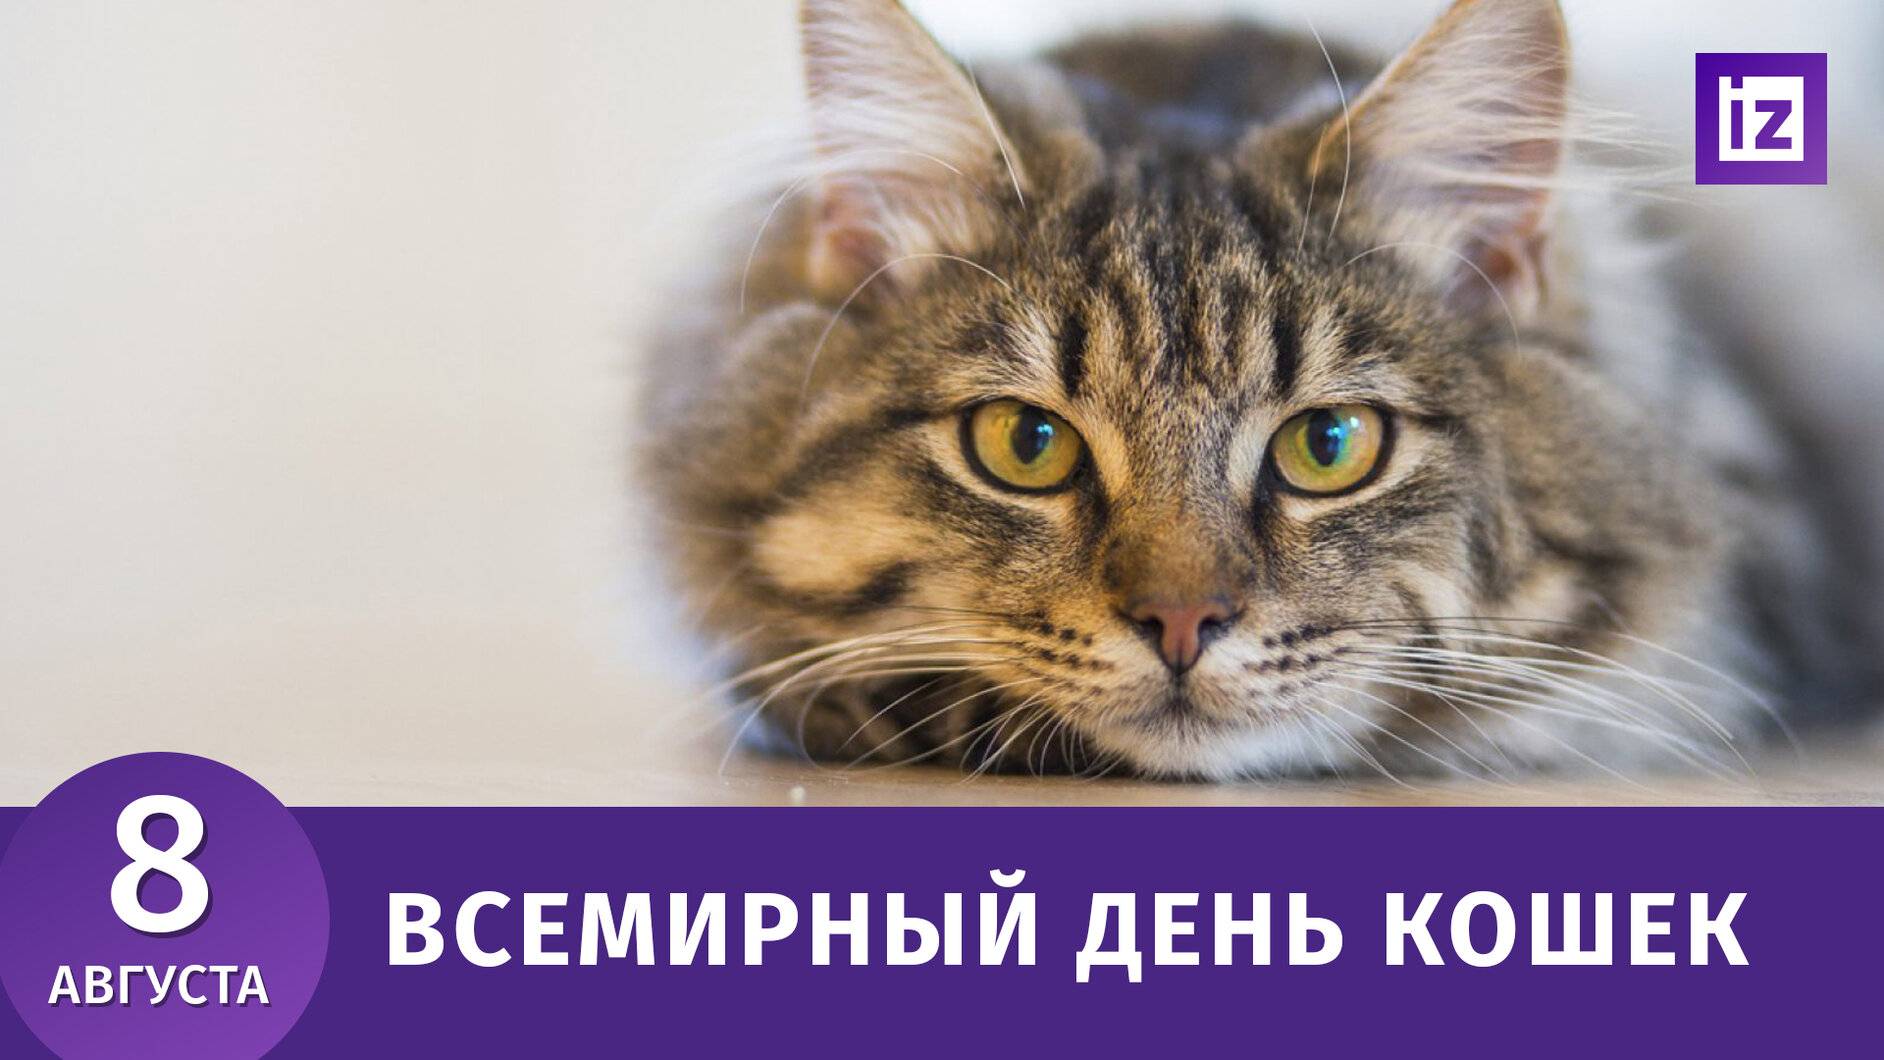 Когда отмечают всемирный день кошек в россии и по всему миру